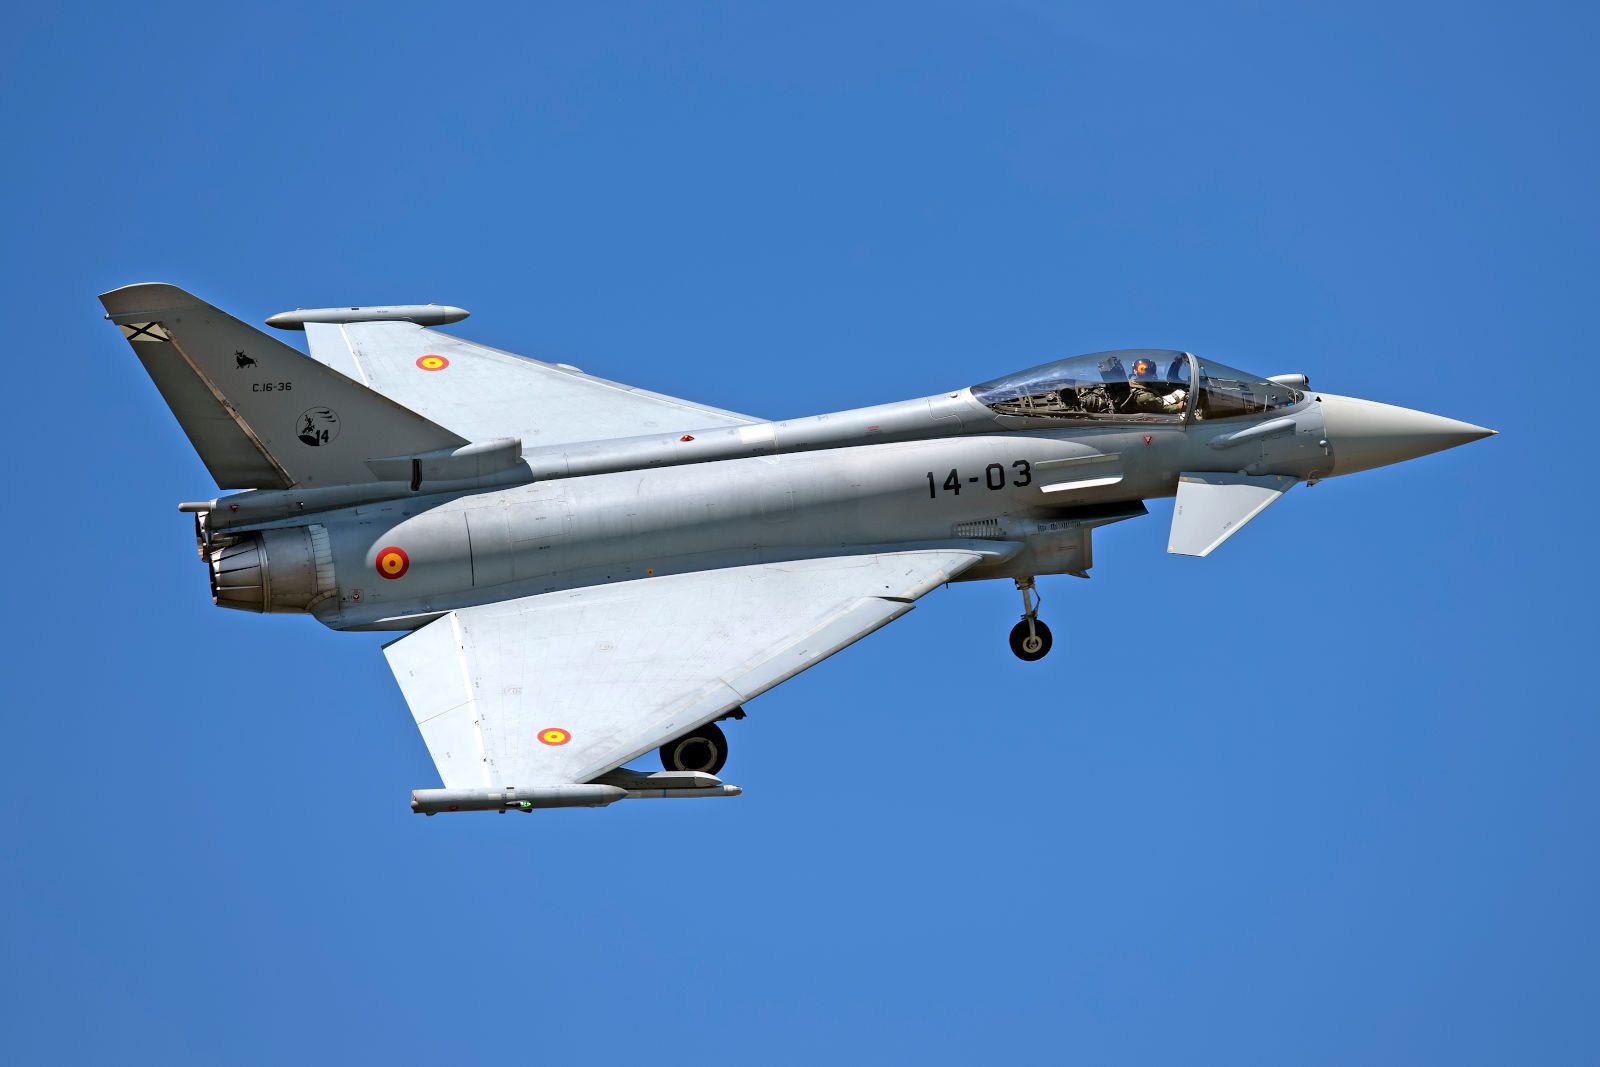 Βρετανία: Το Eurofighter Typhoon εξοπλίστηκε με το προηγμένο ραντάρ Mk2 της Leonardo